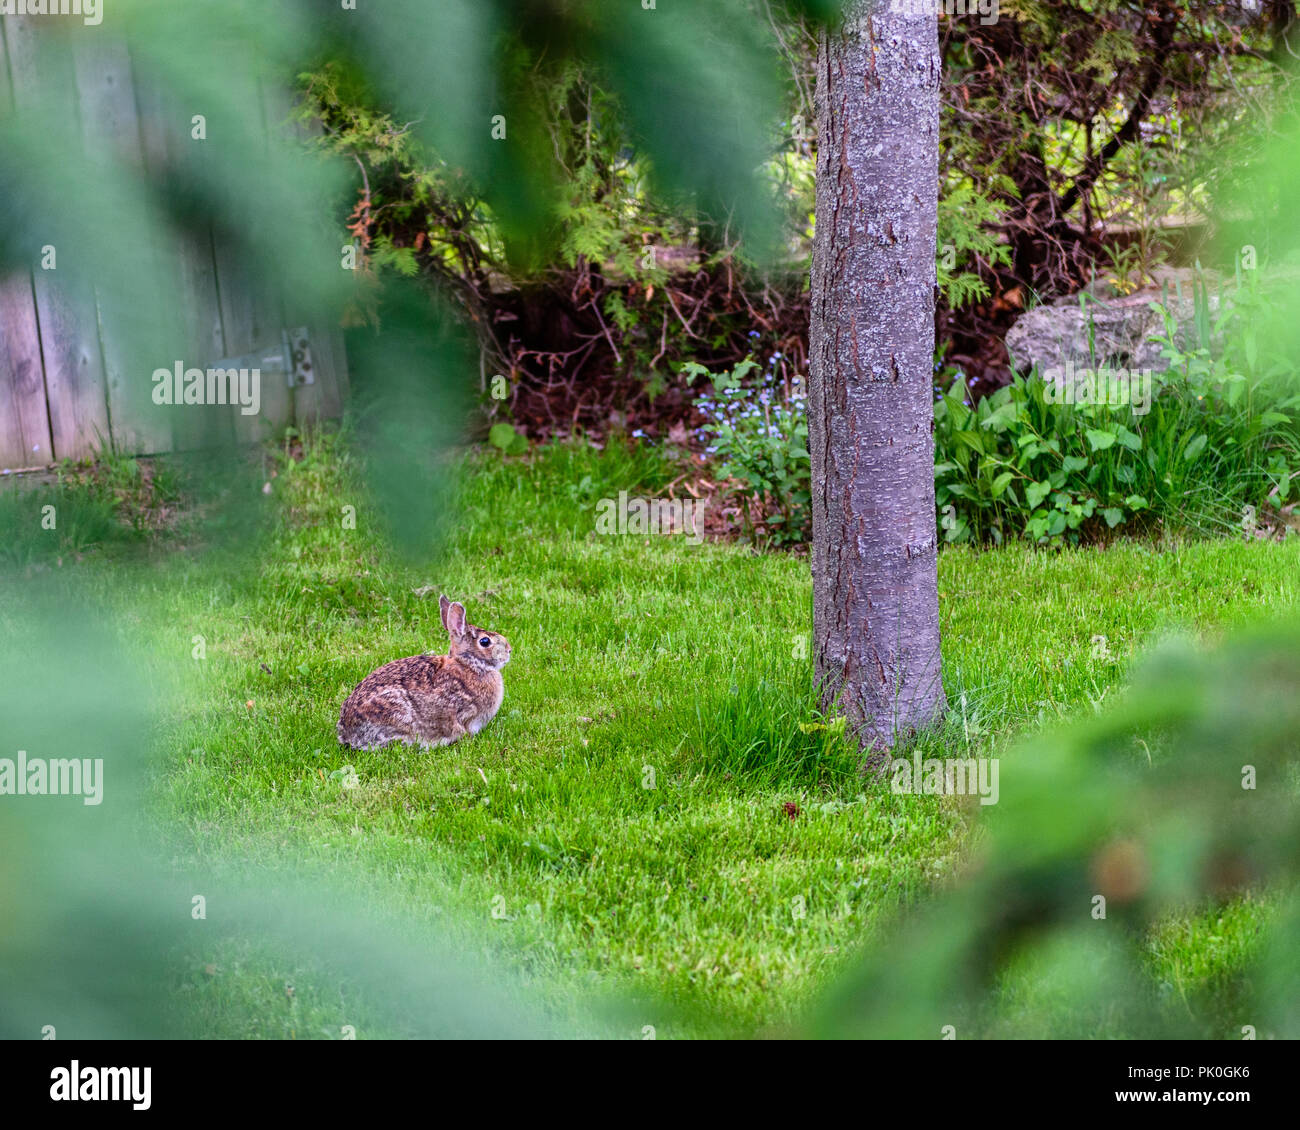 Conejito sentado en la hierba junto a un árbol, visto a través de algunos árboles Foto de stock